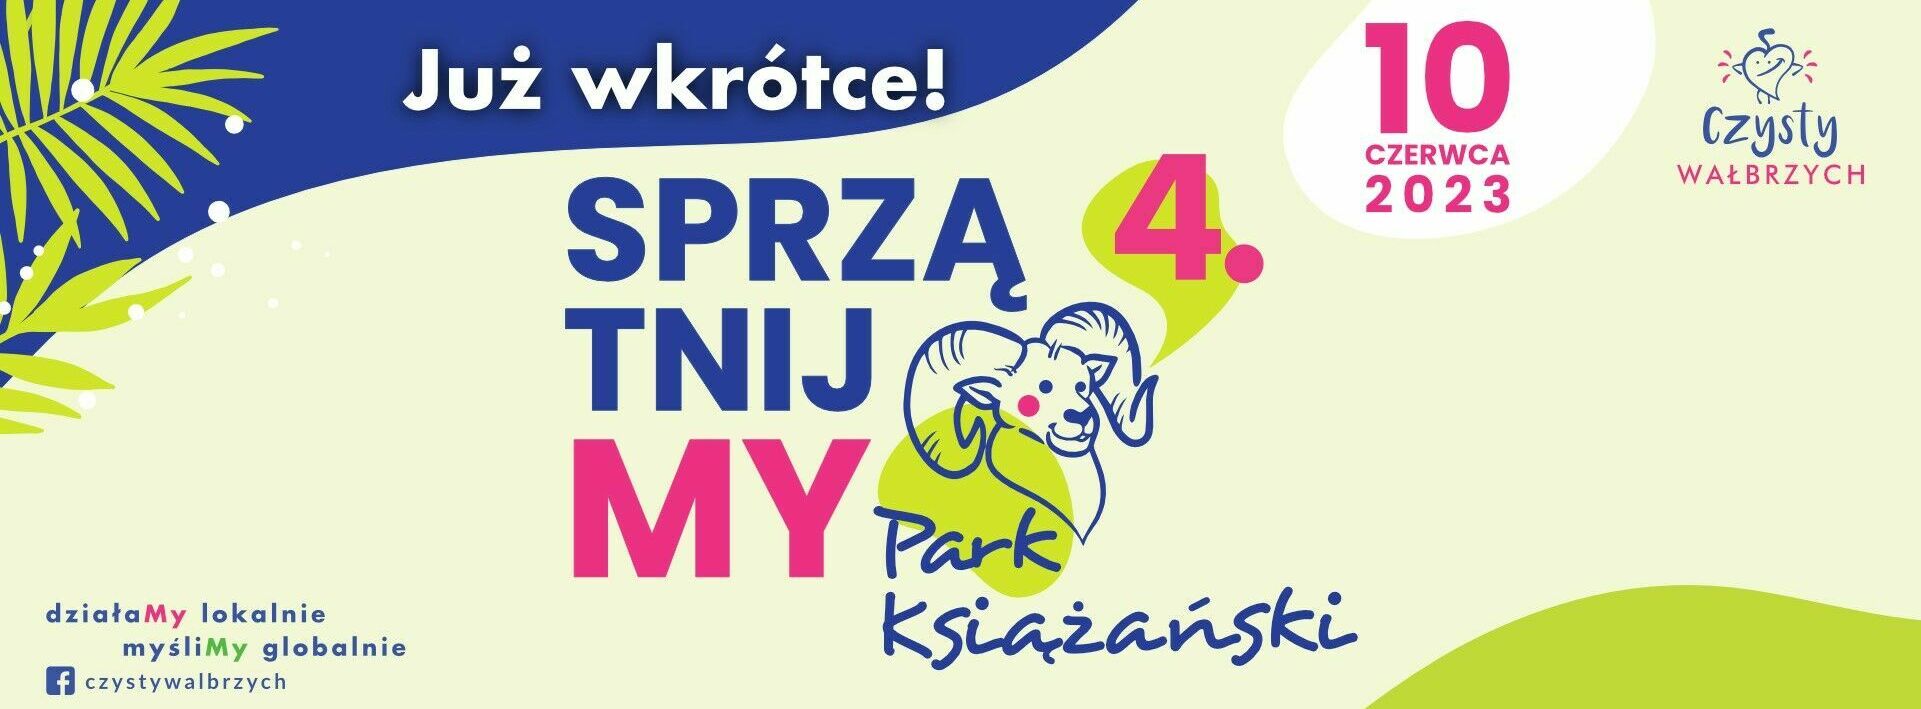 SprzątnijMy Park Książański